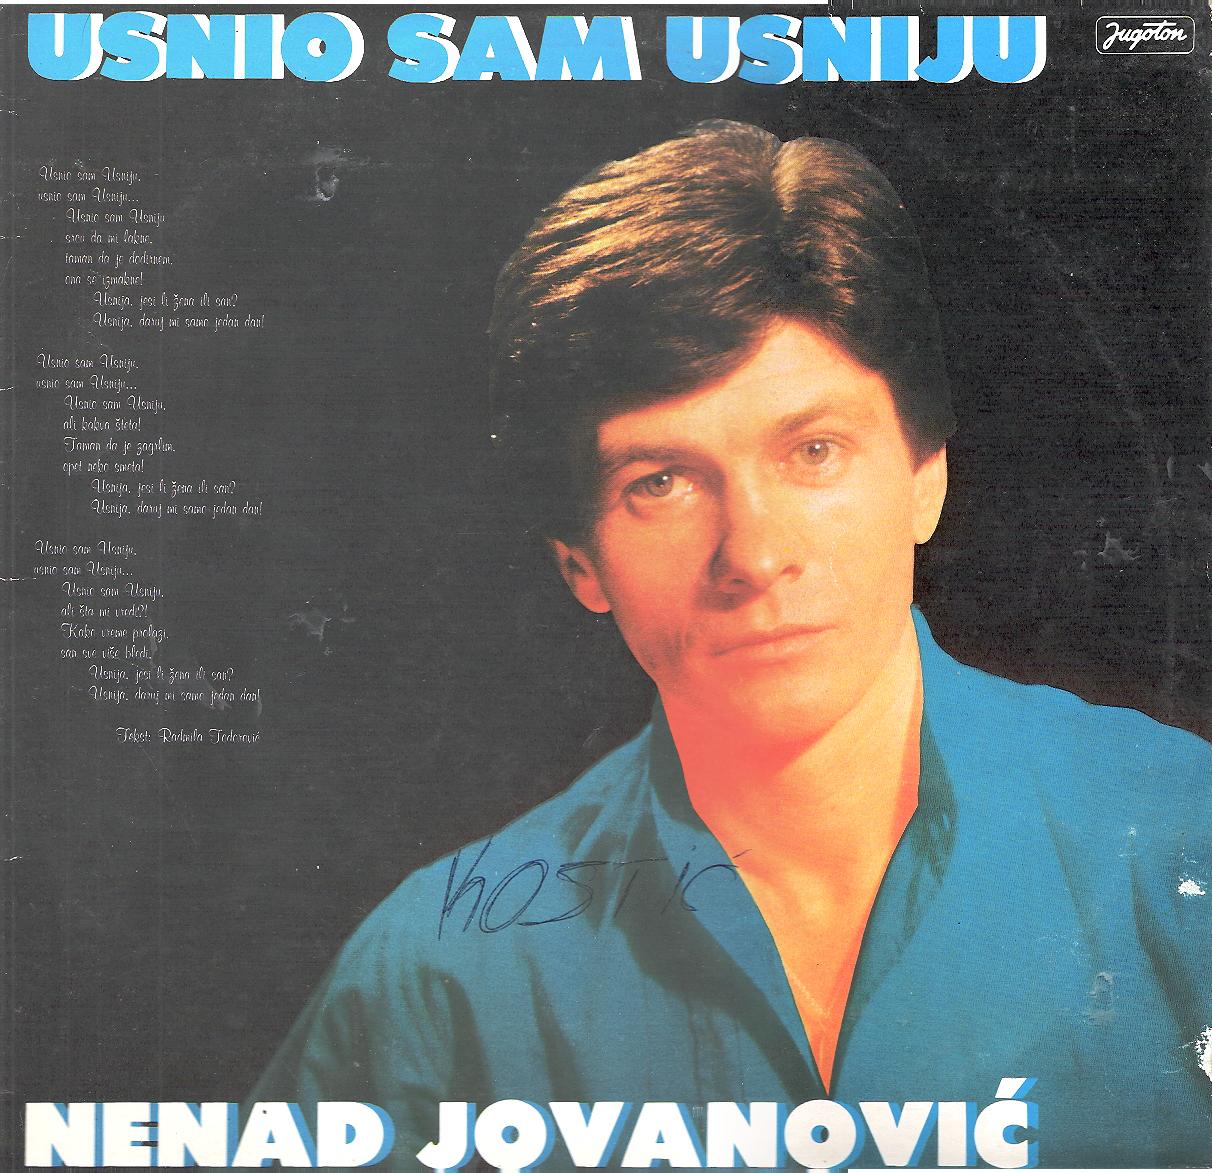 Nenad Jovanovic 1983 Prednja